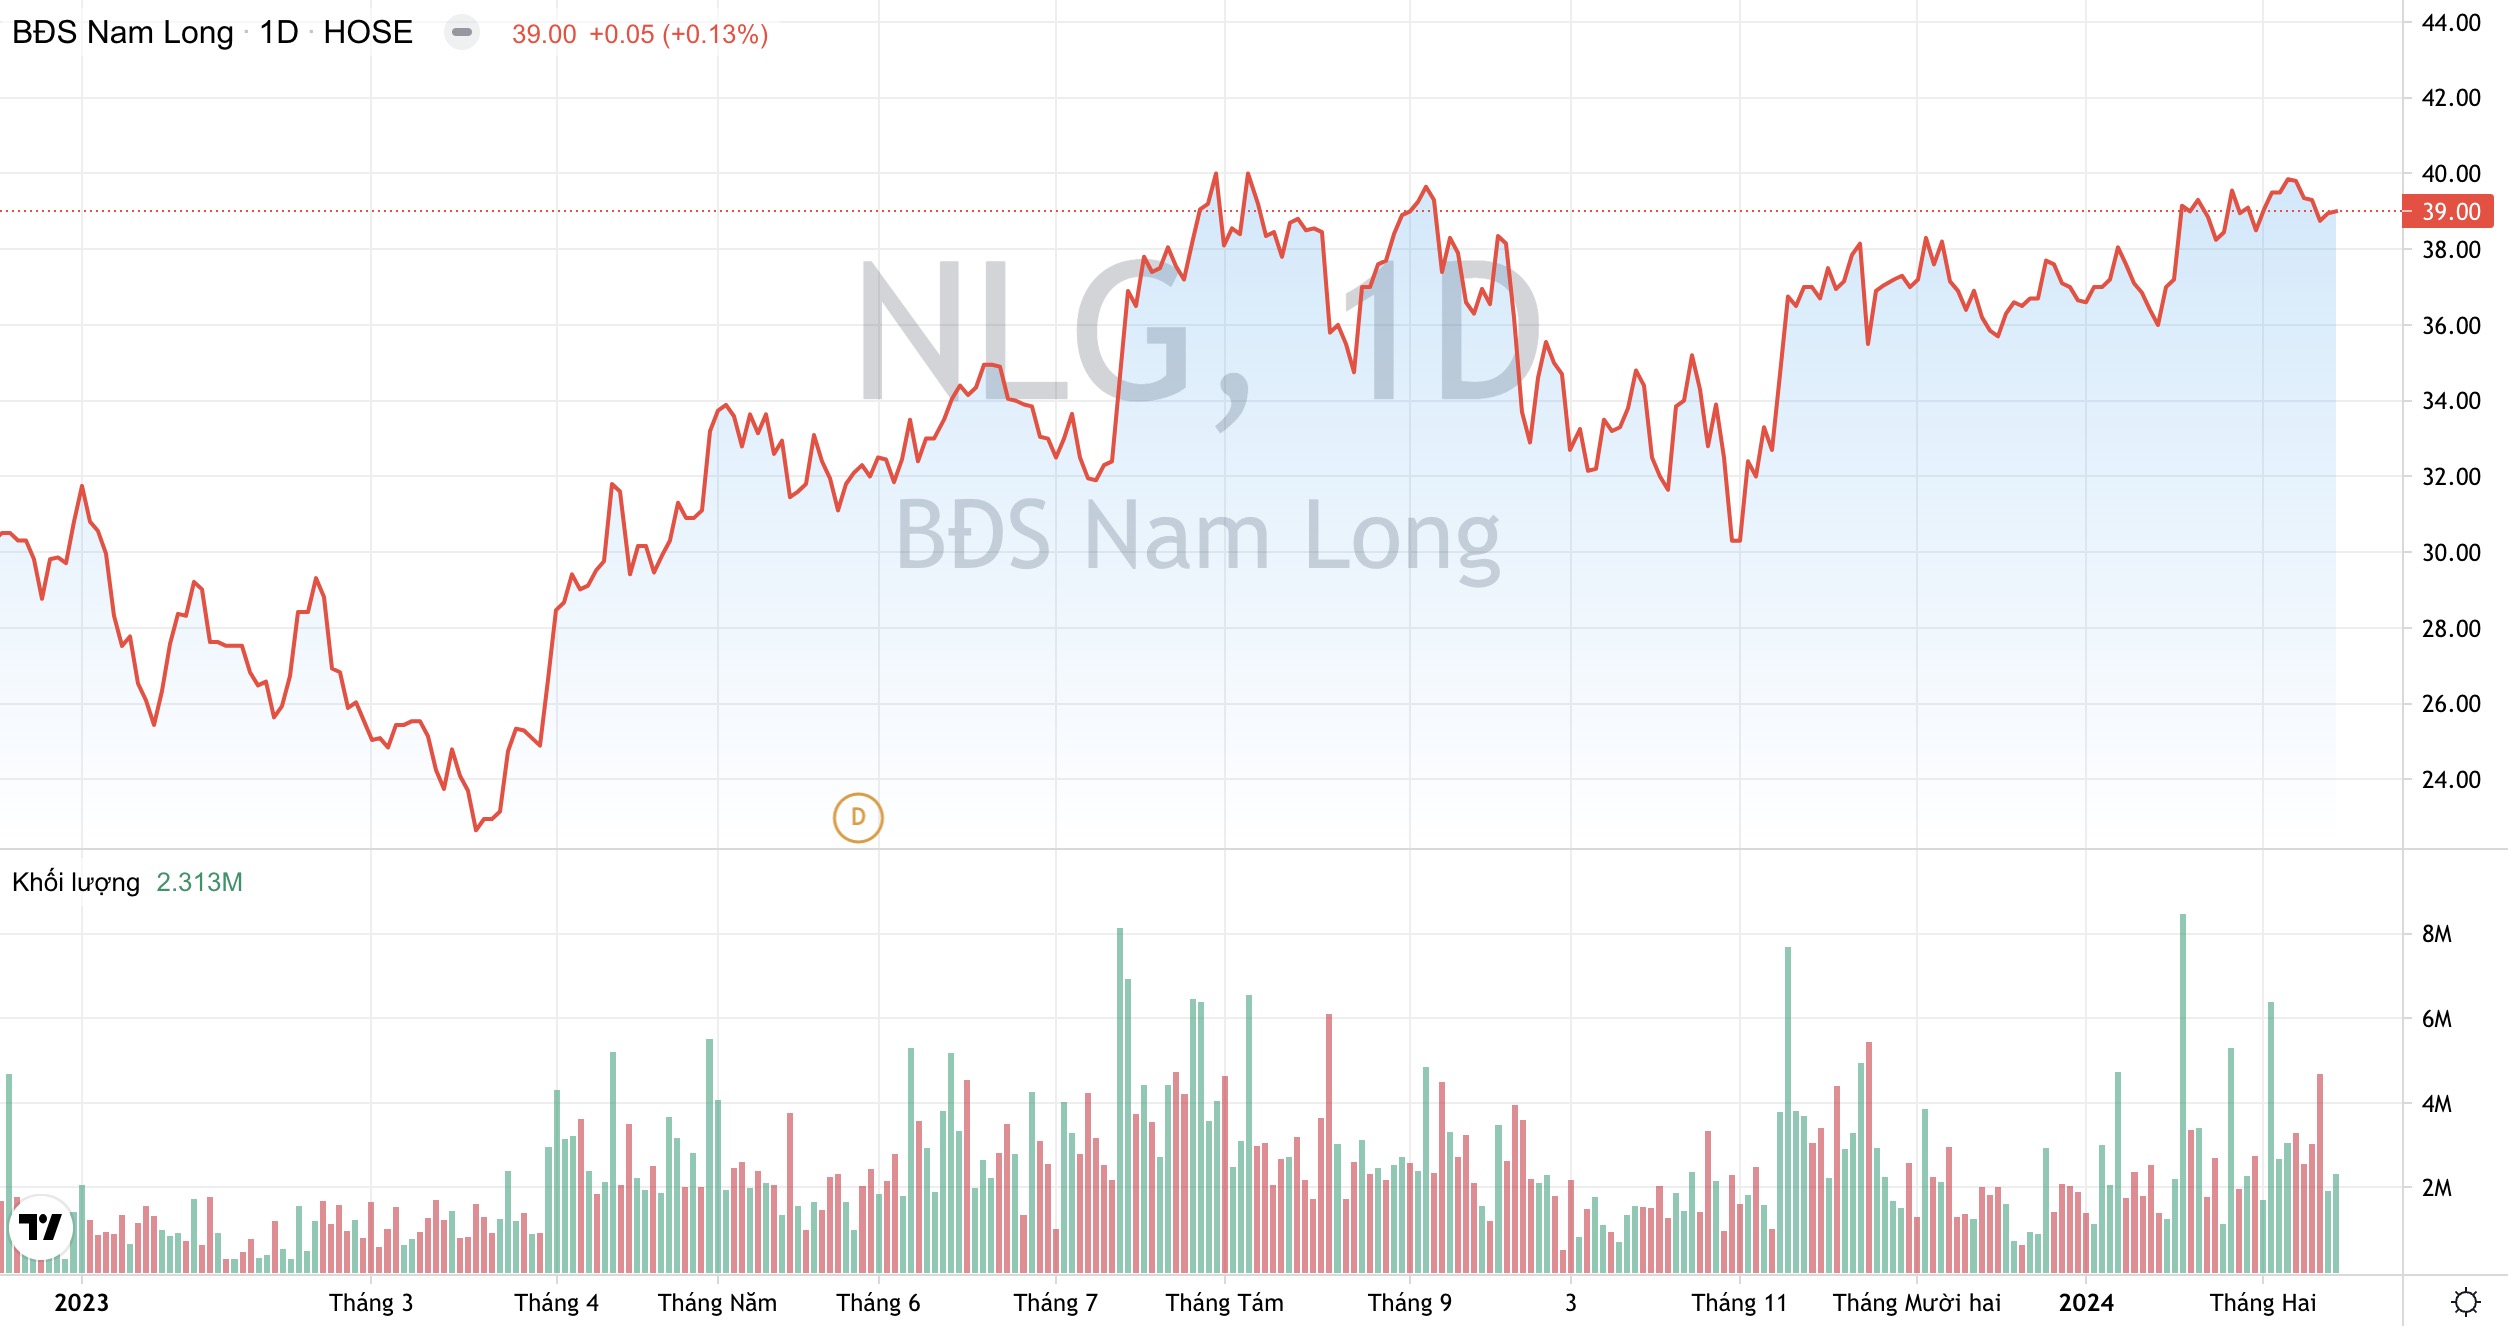 Doanh số bán hàng chưa ghi nhận của Tập đoàn Nam Long NLG ước đạt hơn 11.000 tỷ đồng 2